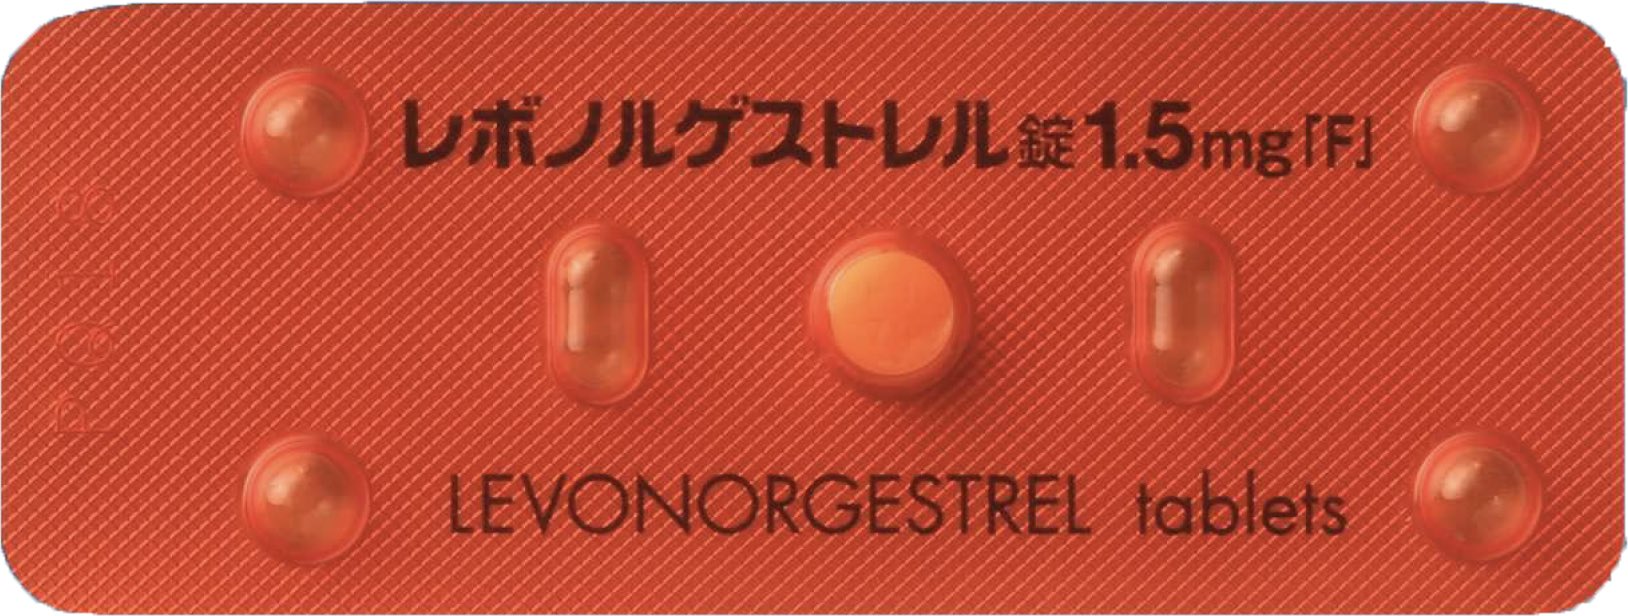 アフターピル「緊急避妊薬」 熊本